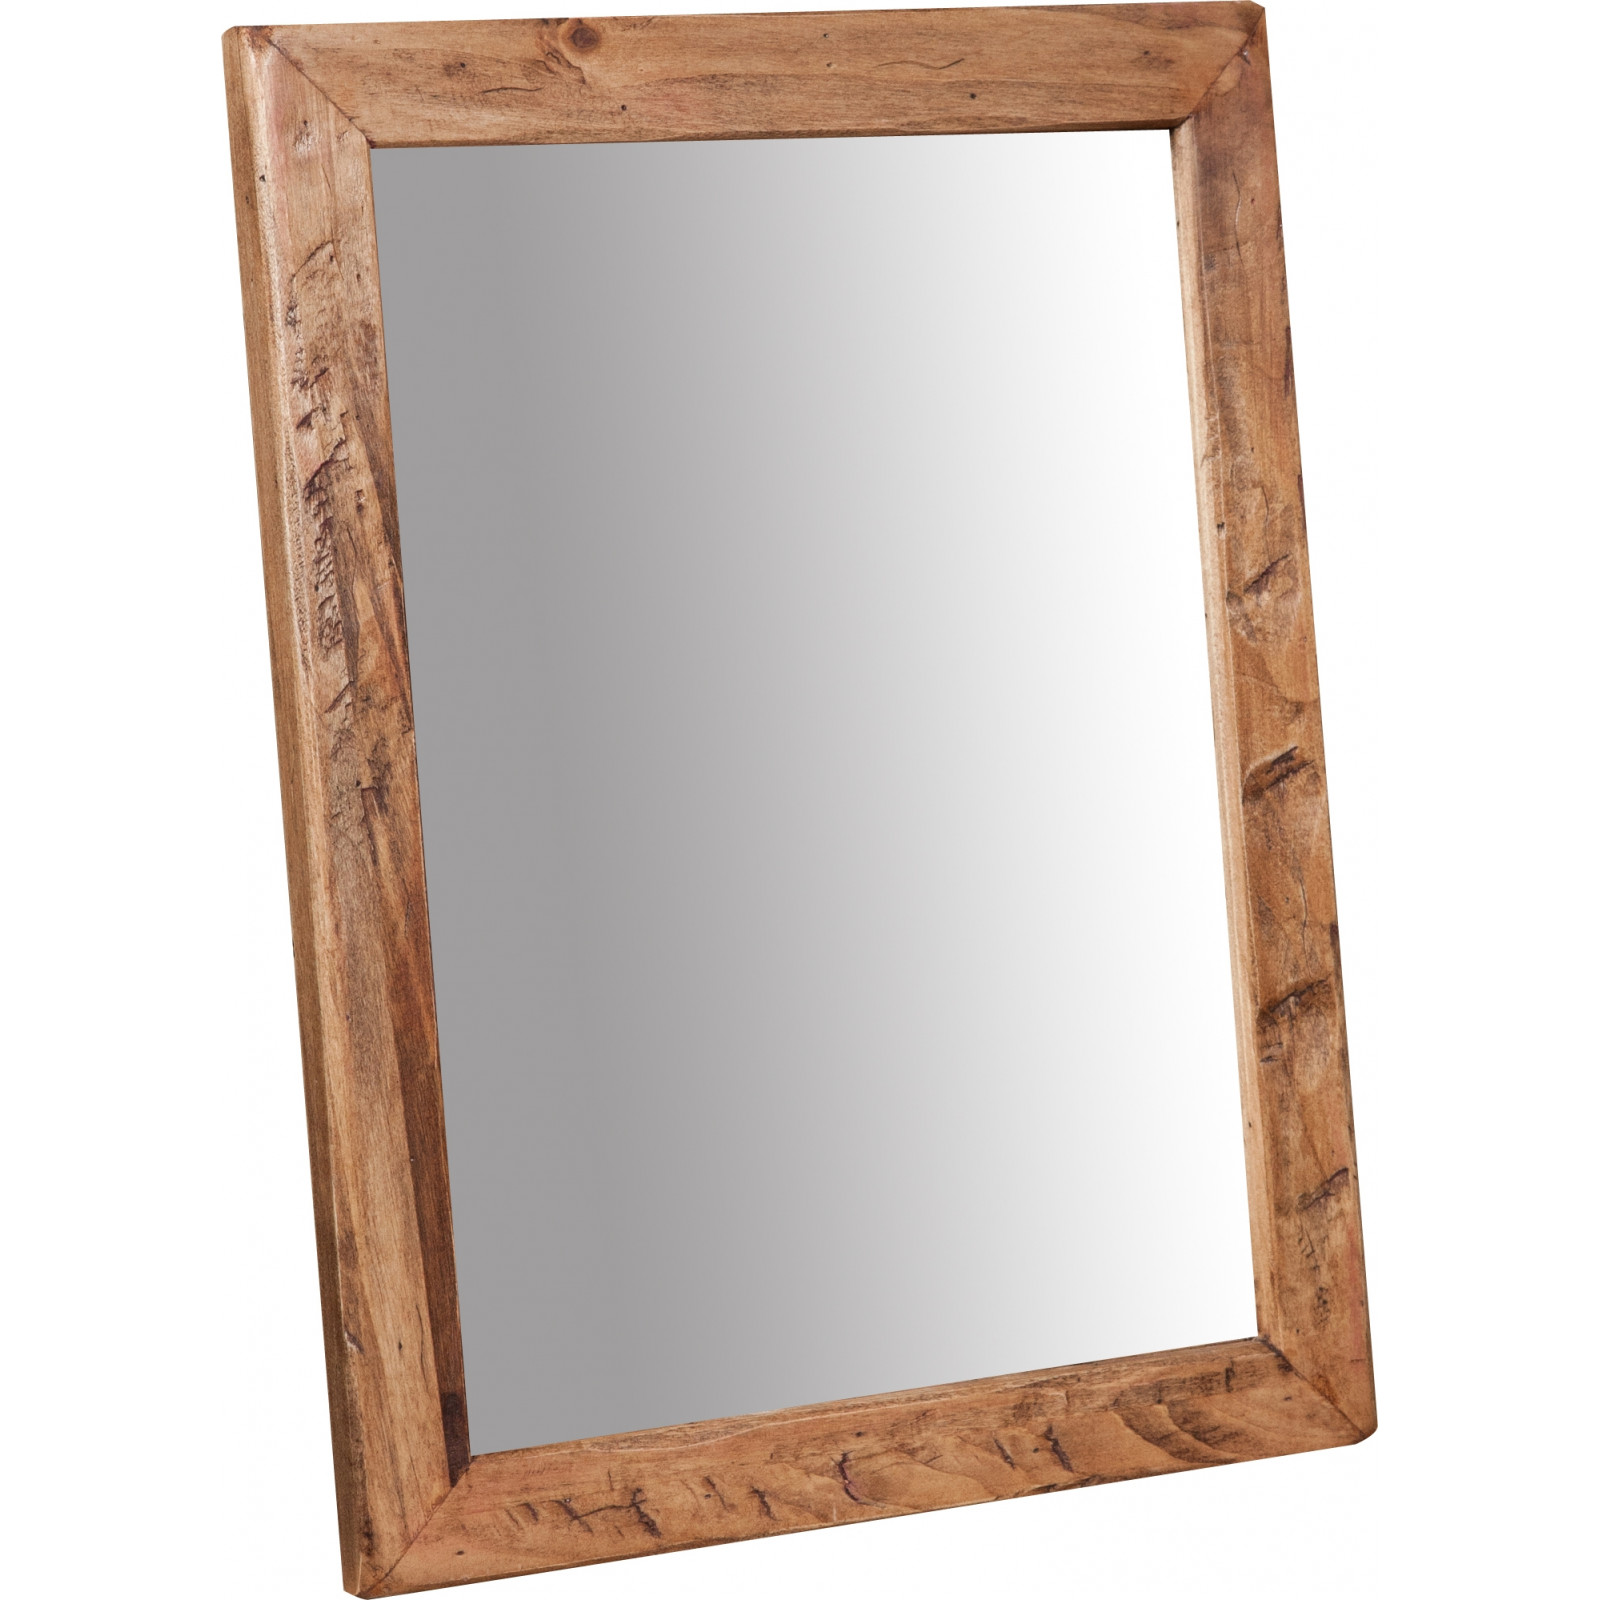 Espejo rectangular de madera maciza de tilo acabado con efecto blanco envejecido Made in Italy